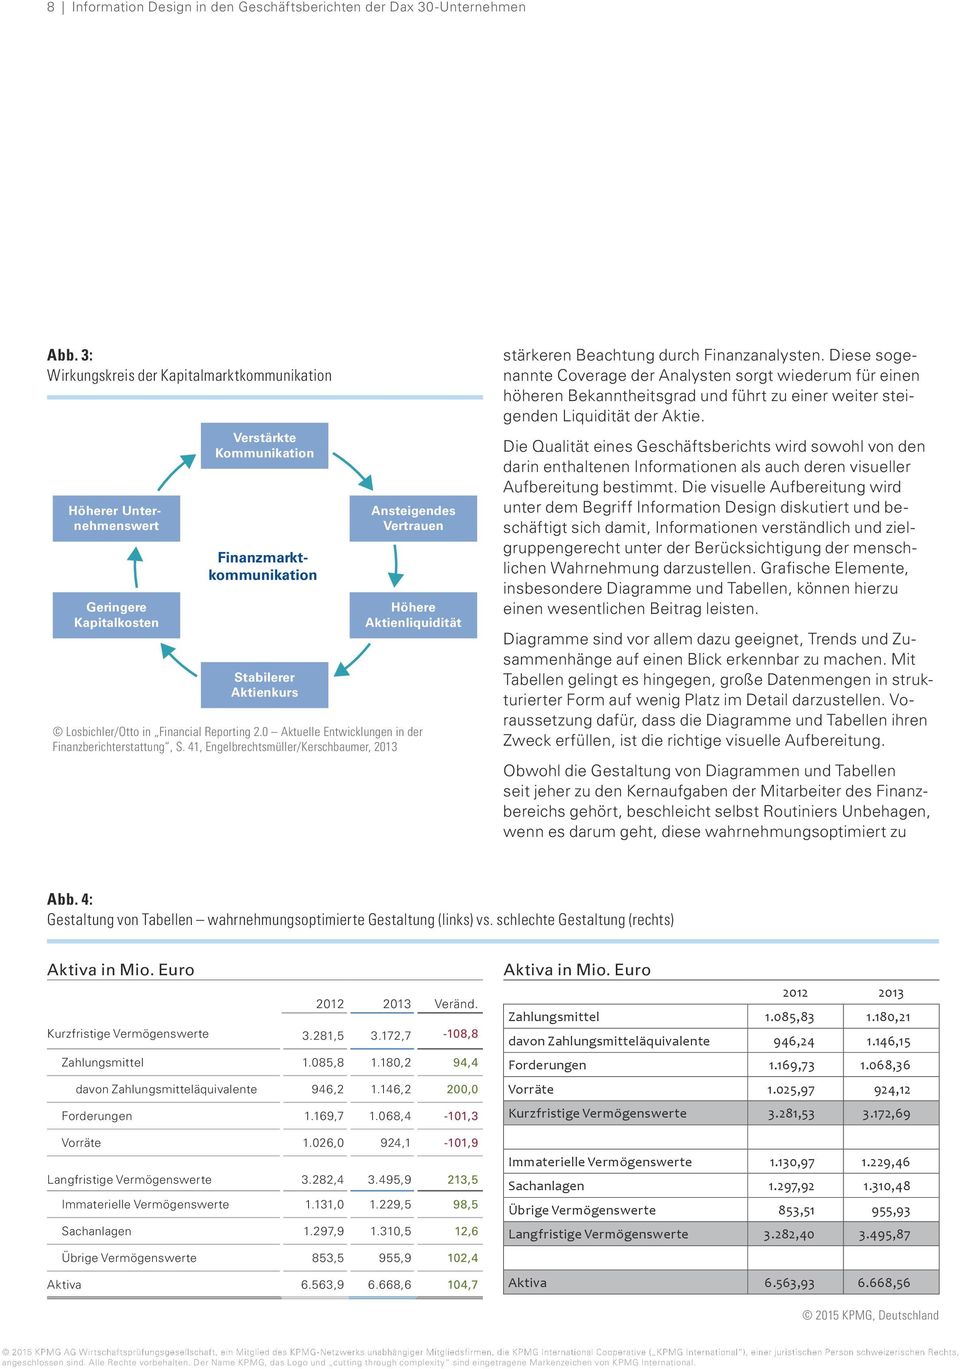 Aktienliquidität Losbichler/Otto in Financial Reporting 2.0 Aktuelle Entwicklungen in der Finanzberichterstattung, S.